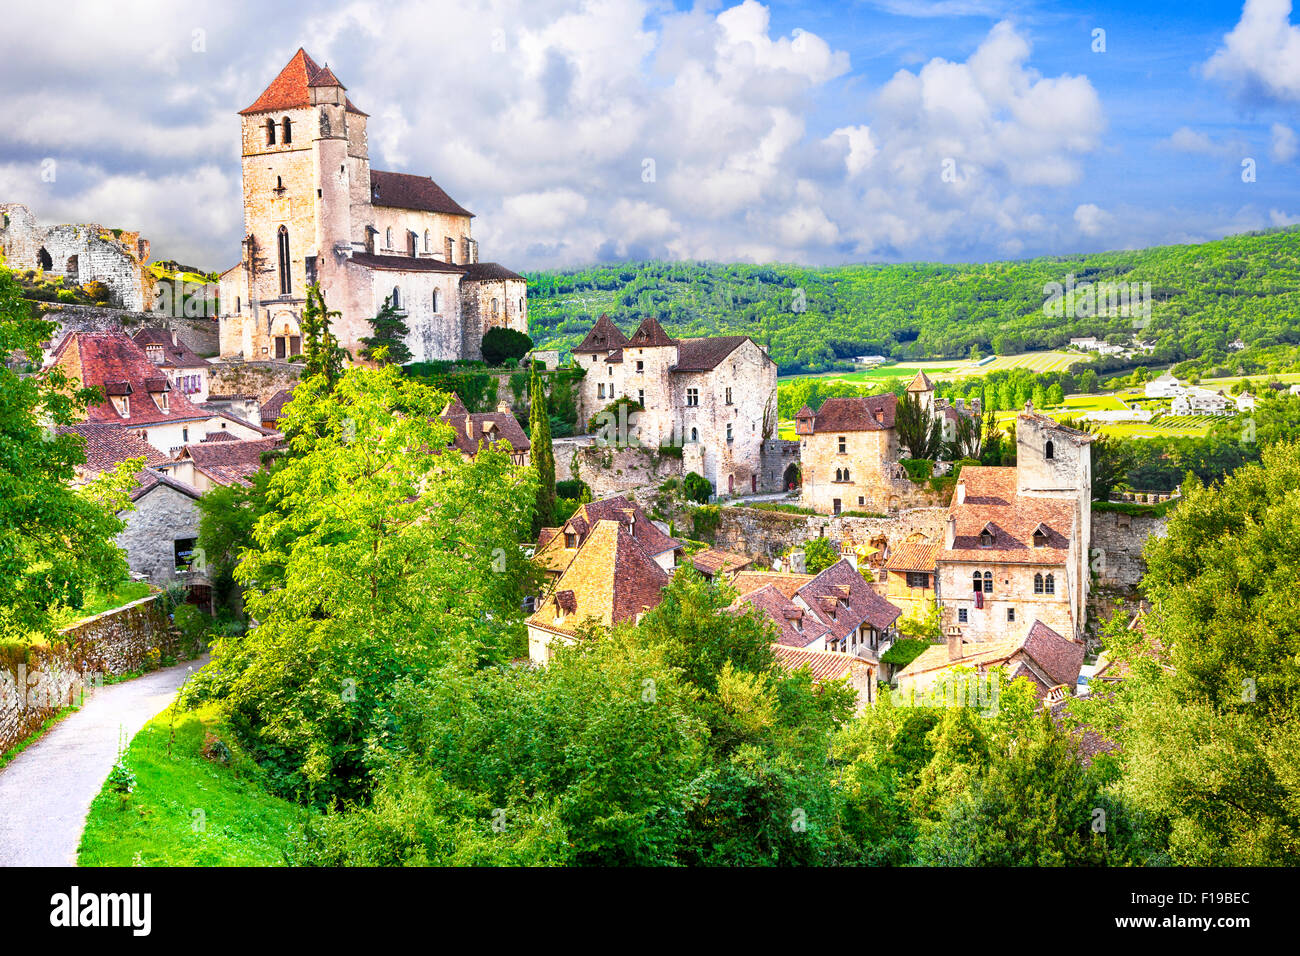 authentisches Dorf Saint-Cirq-Lapopie - eines der schönsten Dörfer in Frankreich Stockfoto